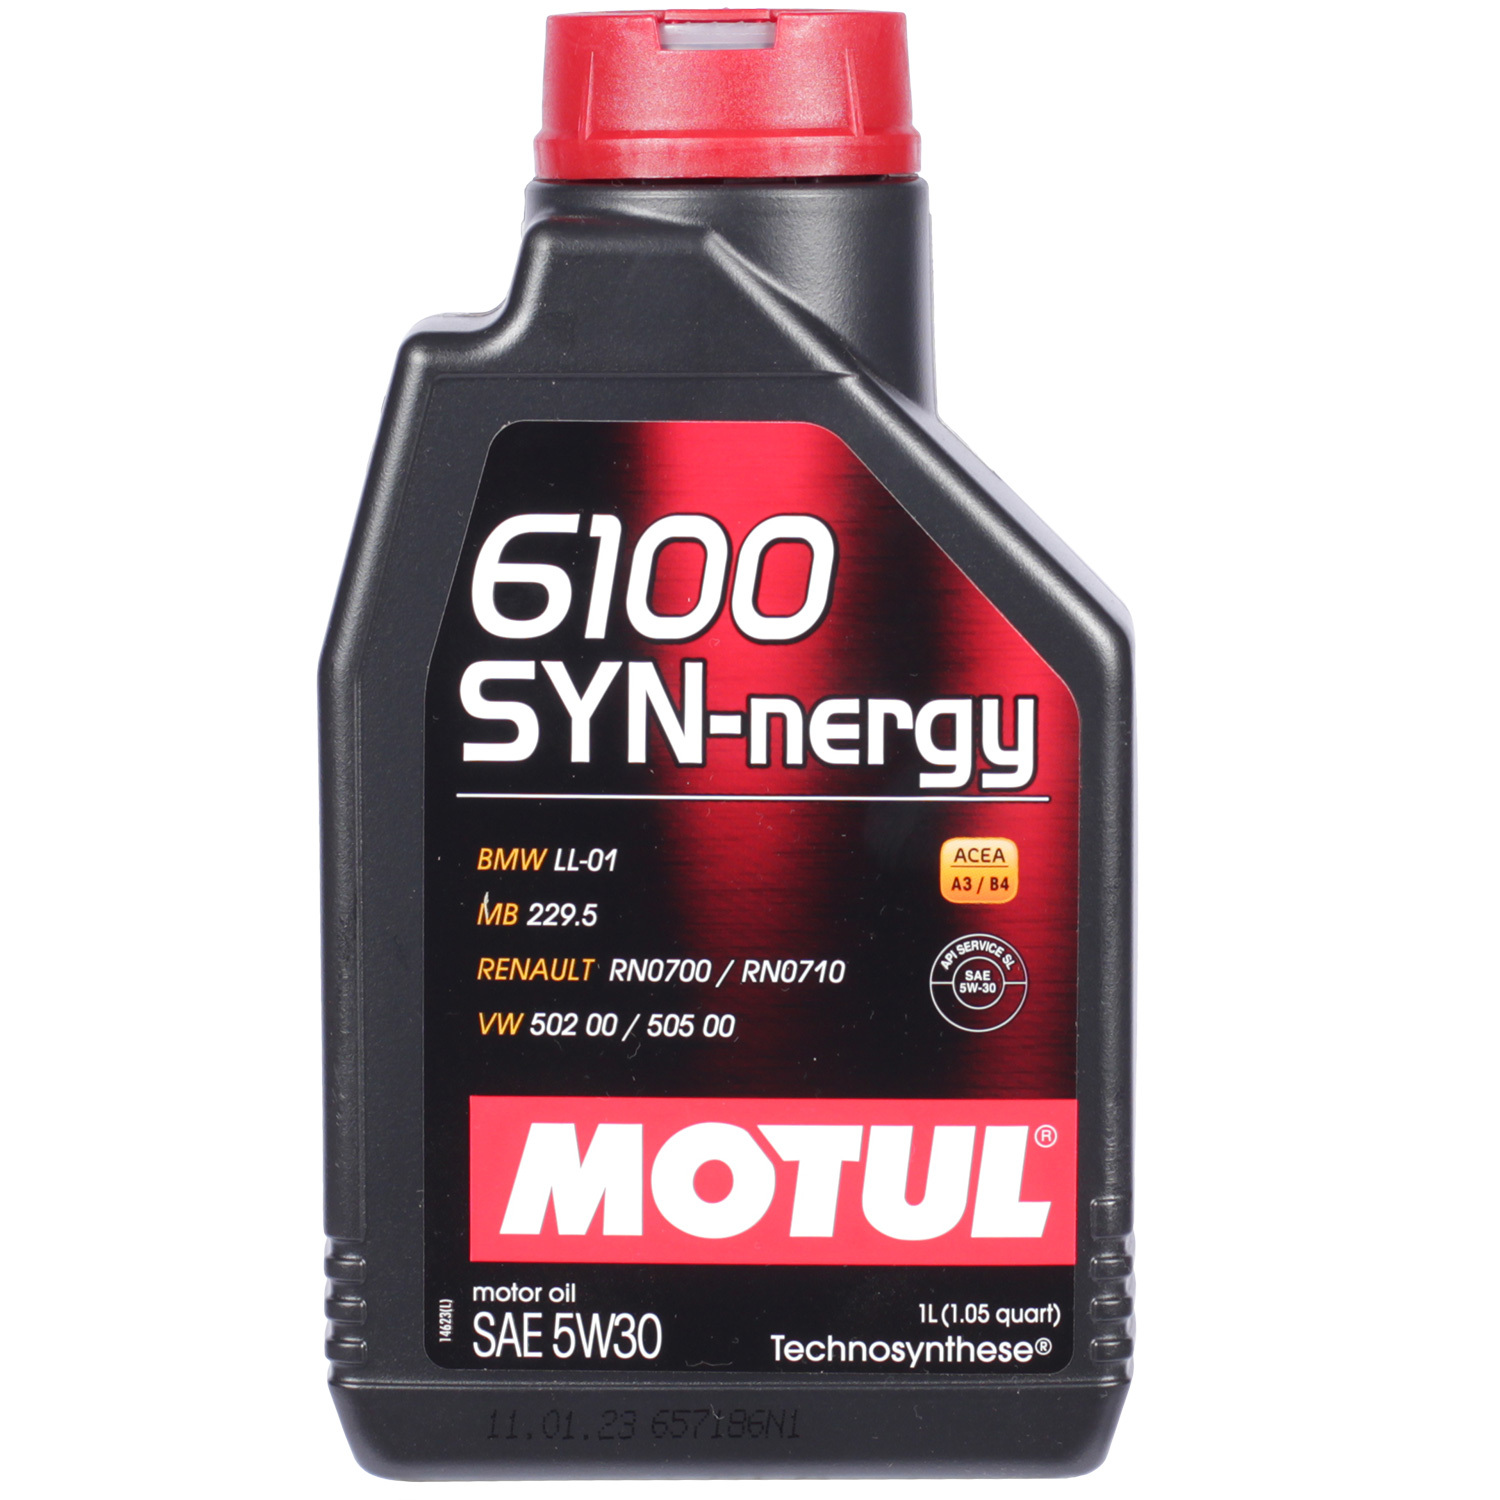 Motul Моторное масло Motul 6100 SYN-NERGY 5W-30, 1 л motul моторное масло motul 6100 synergie 5w 30 4 л